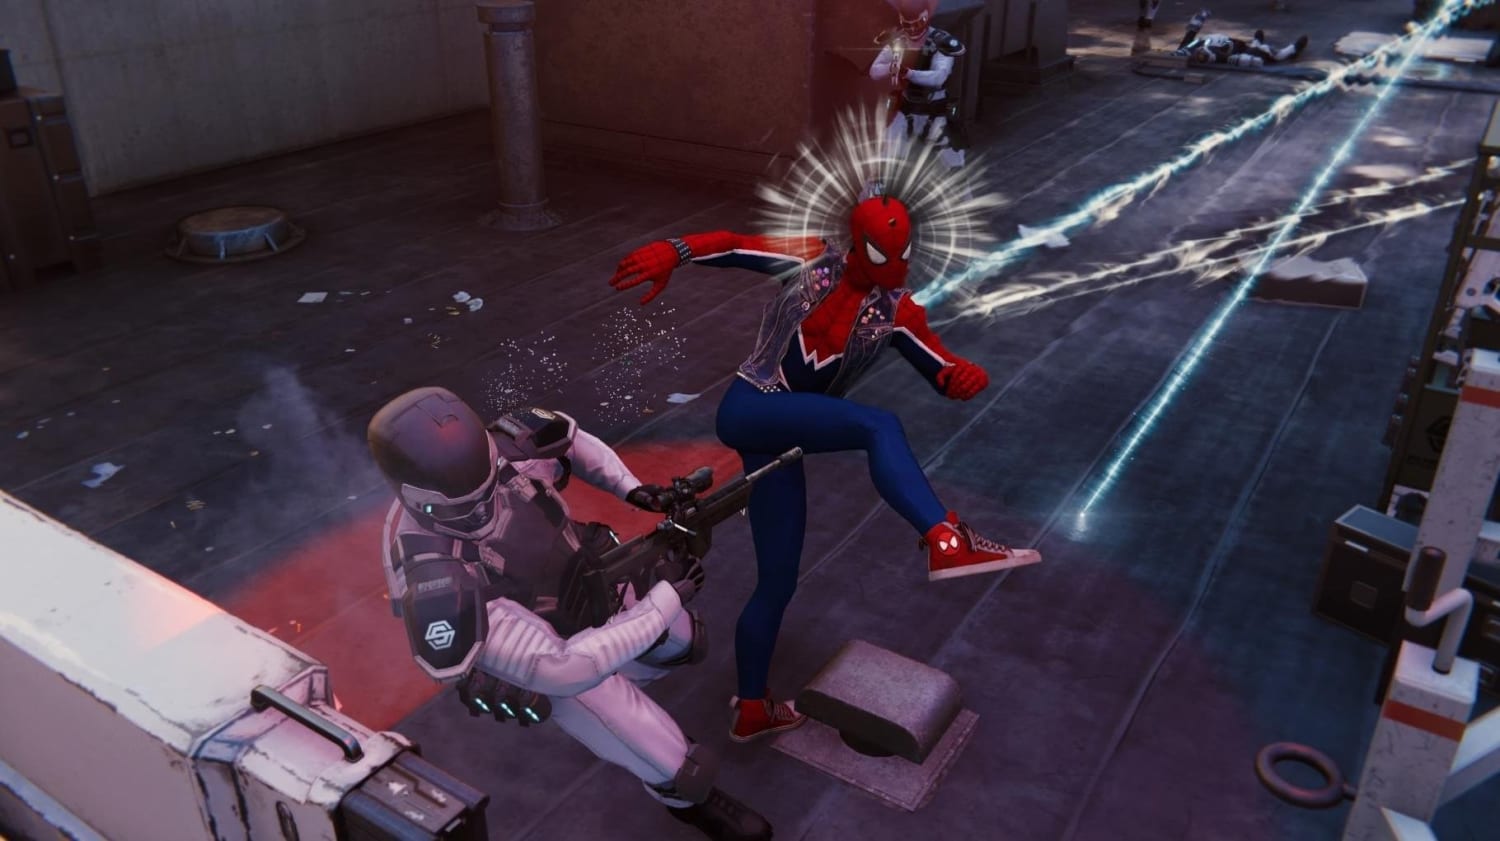 Spider-Man Ps4 - Undies Spider-Man Gameplay Showcase 